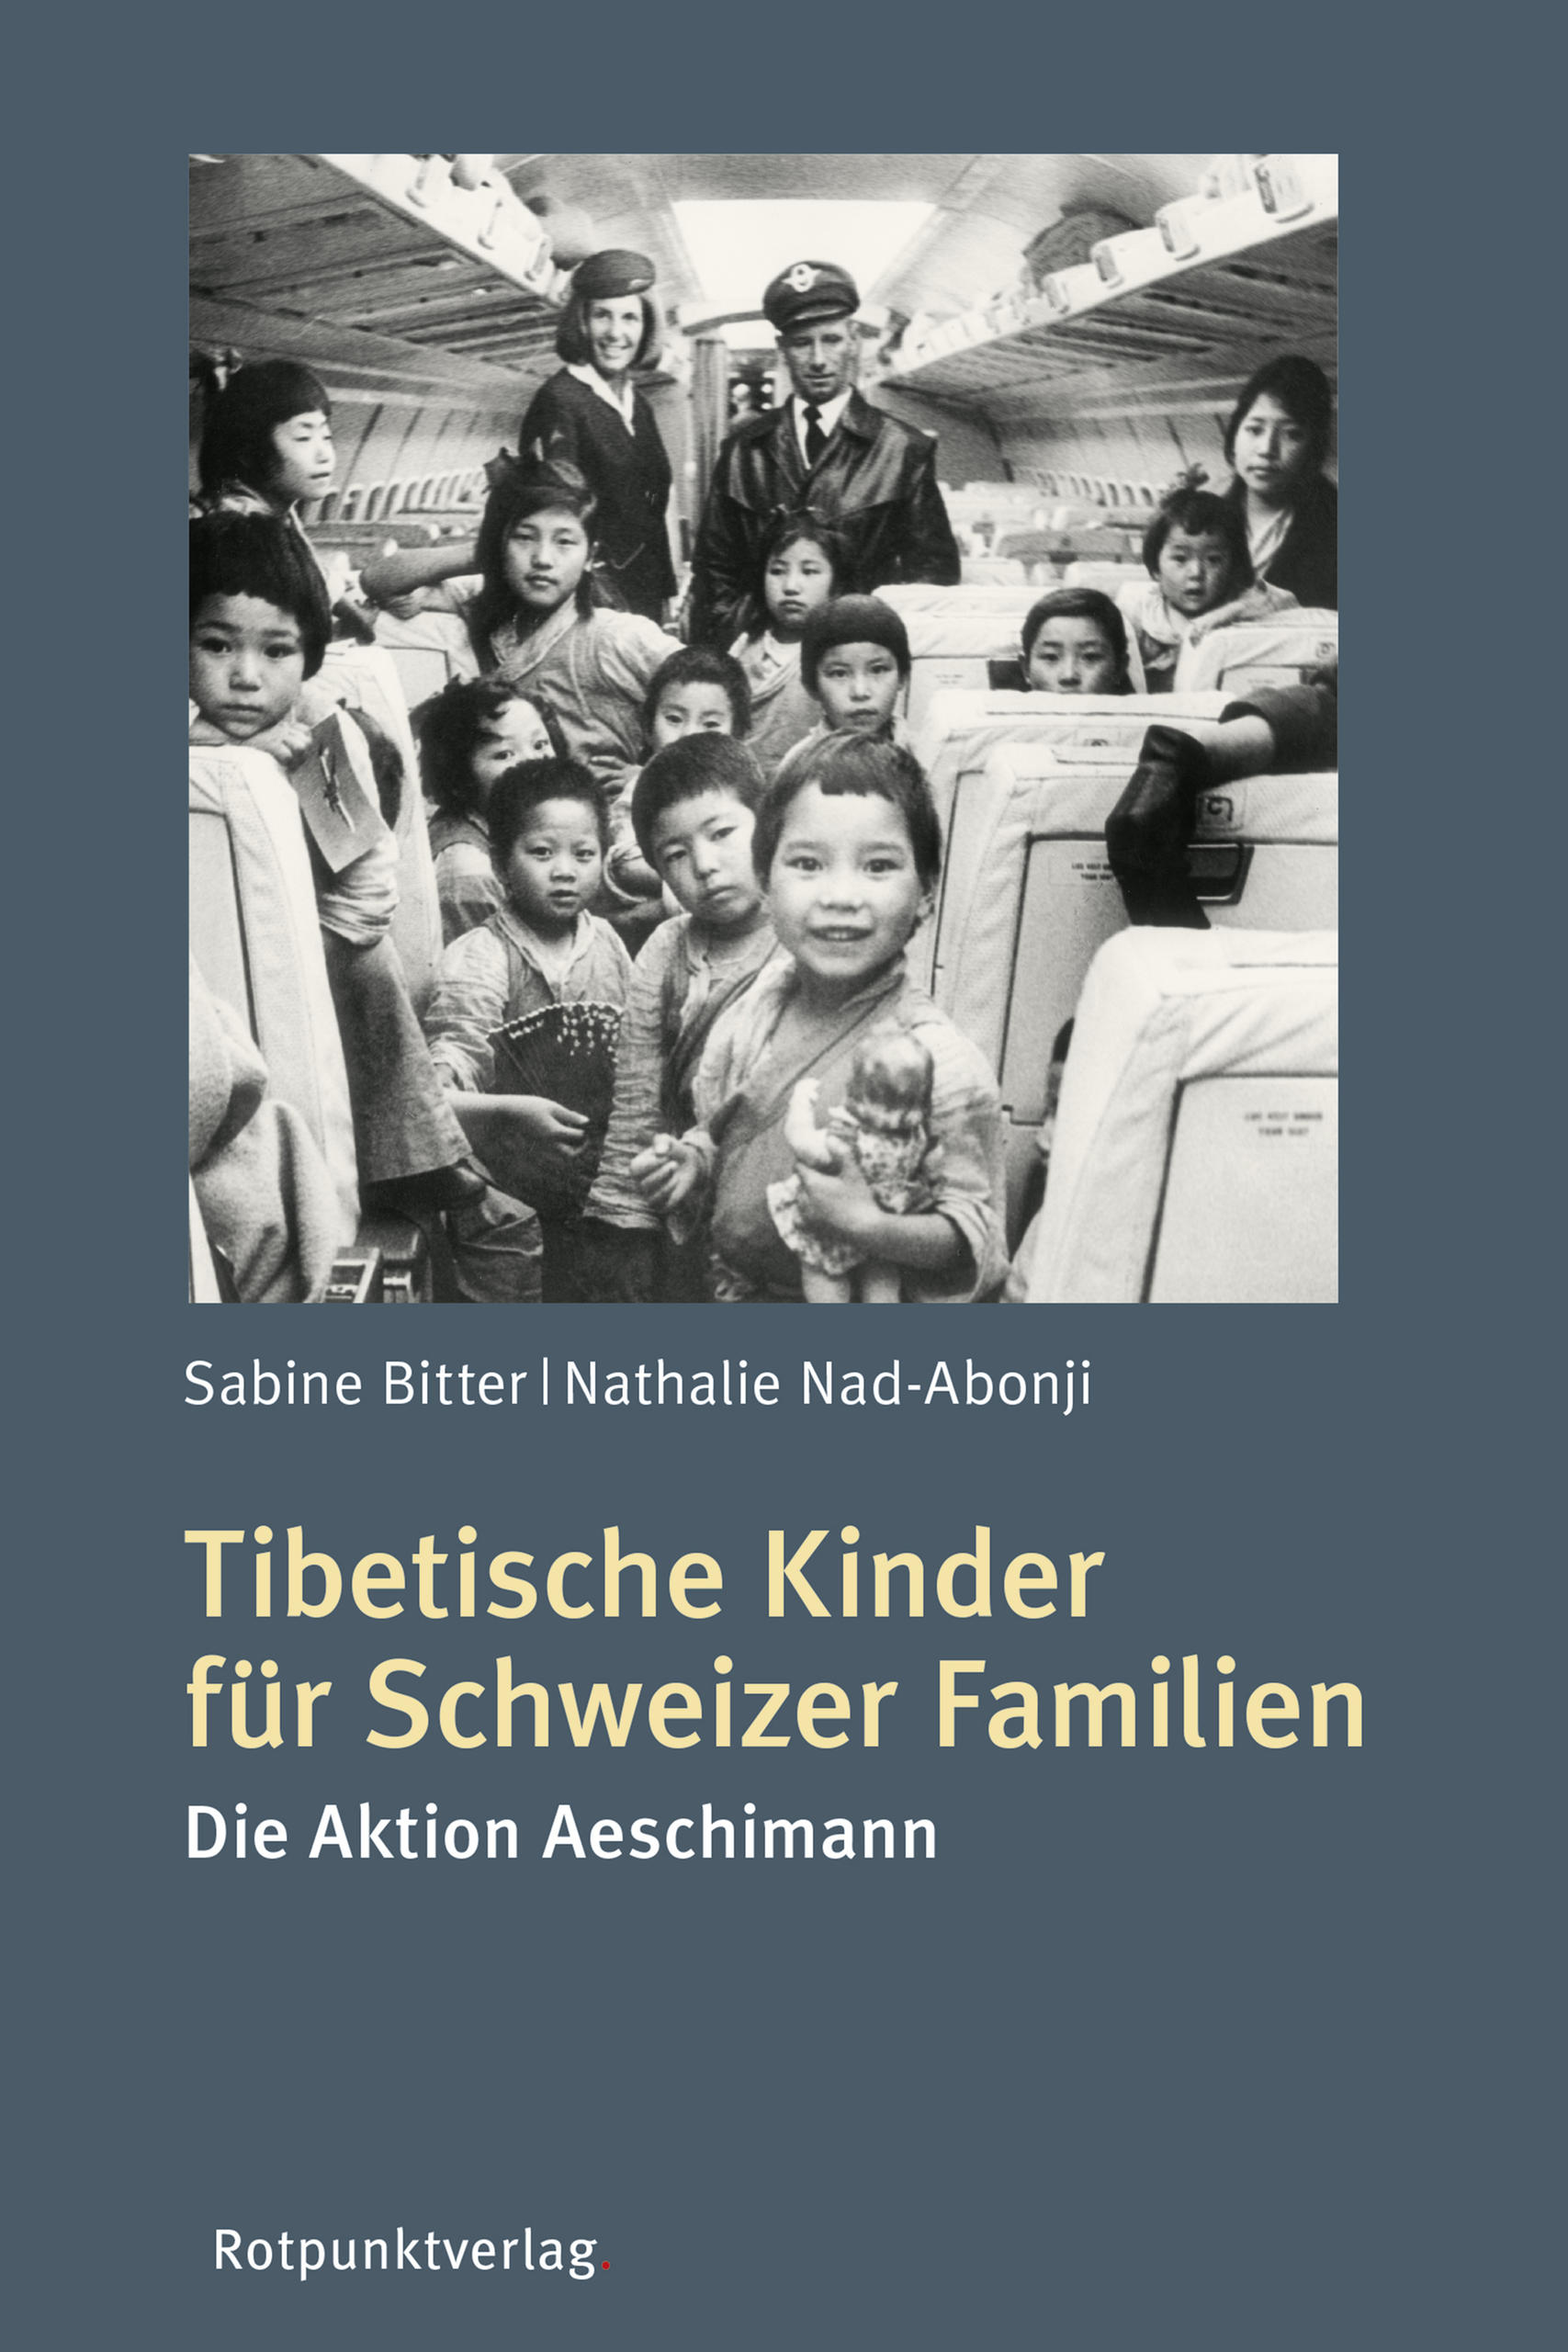 Buchcover von Tibetische Kinder für Schweizer Familien – Die Aktion Aeschimann : Foto mit tibetischen Kindern in einem Flugzeug